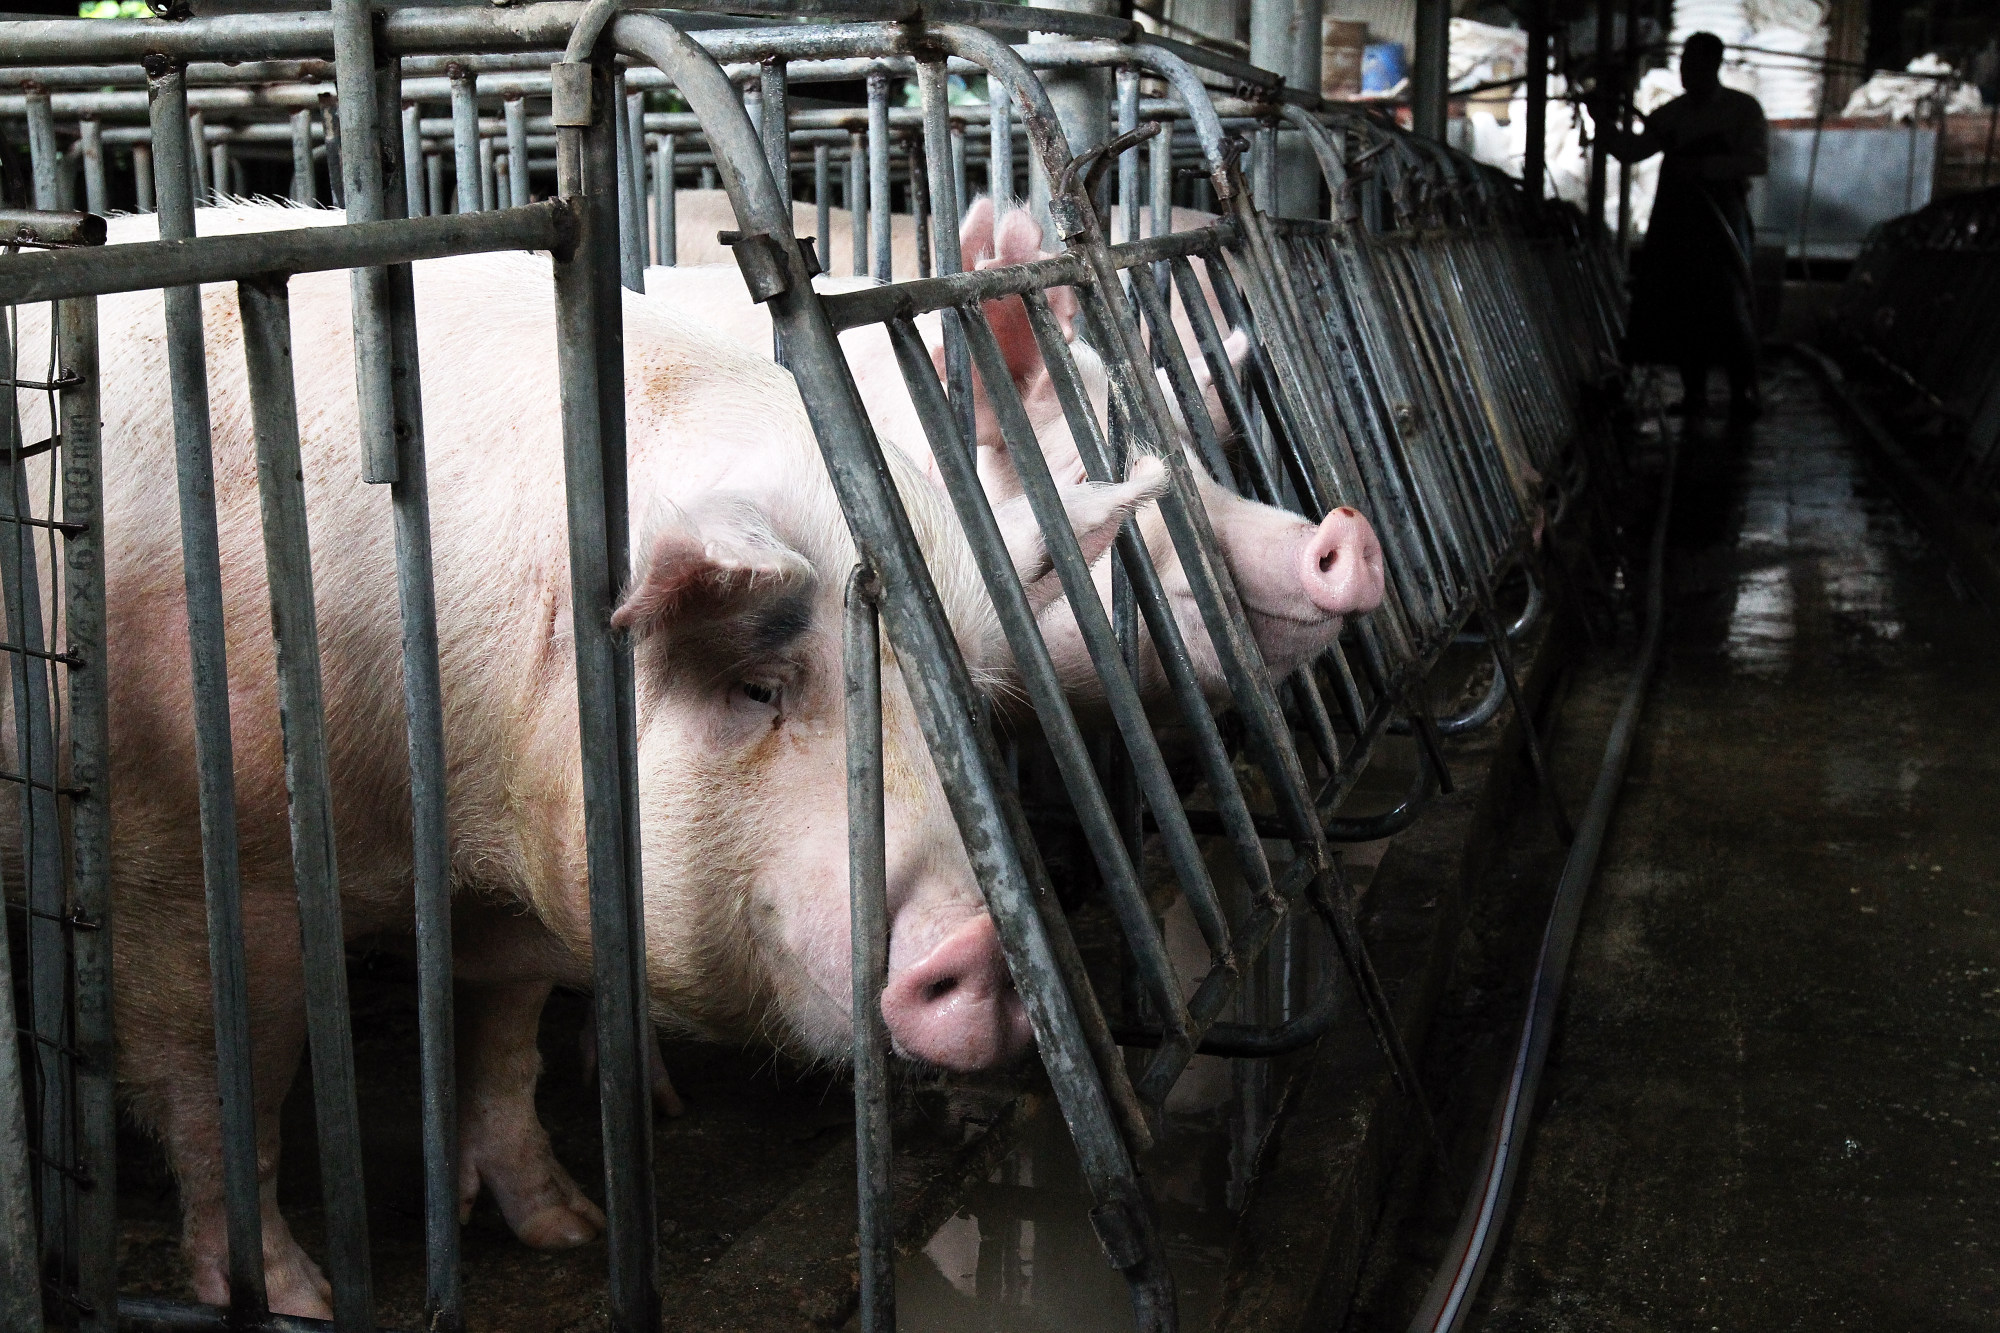 Pork prices set to soar as African swine fever devastates pig